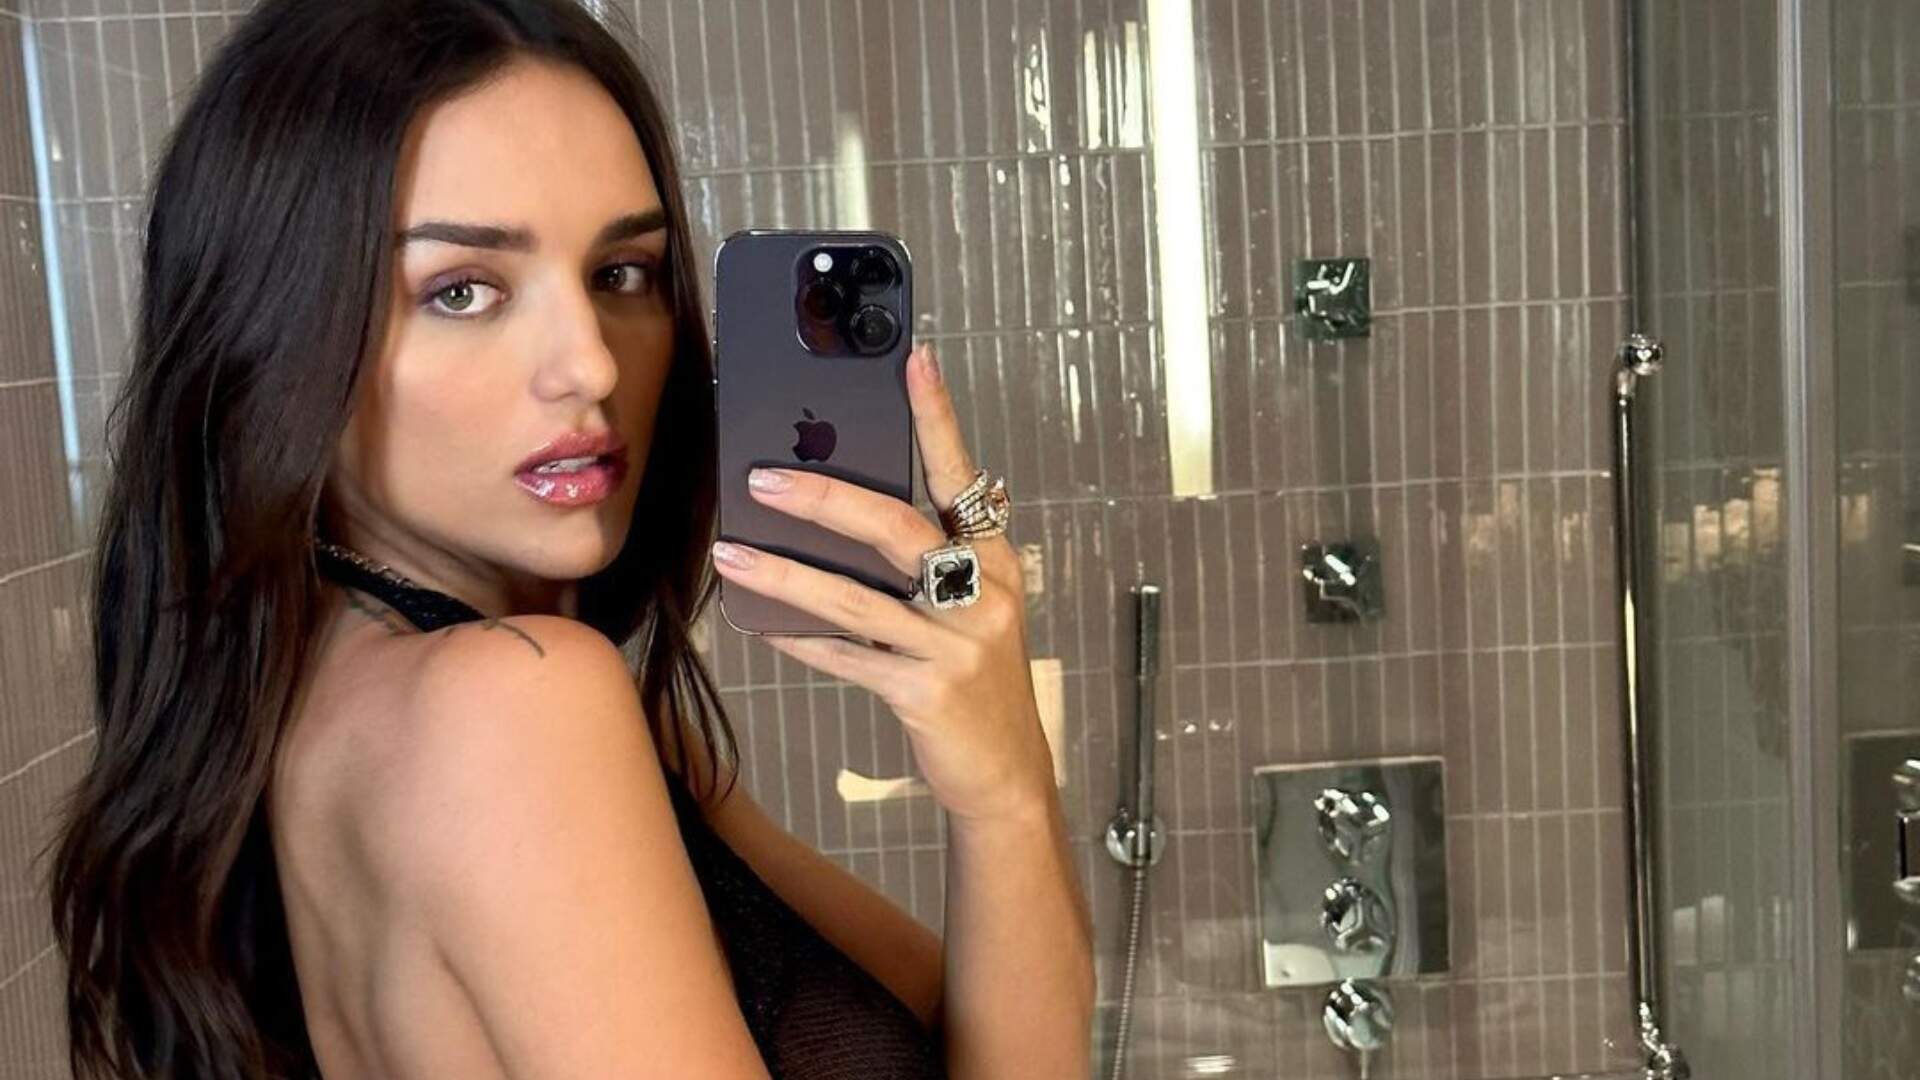 Rafa Kalimann “testa” câmera do novo celular sensualizando de roupa transparente no banheiro